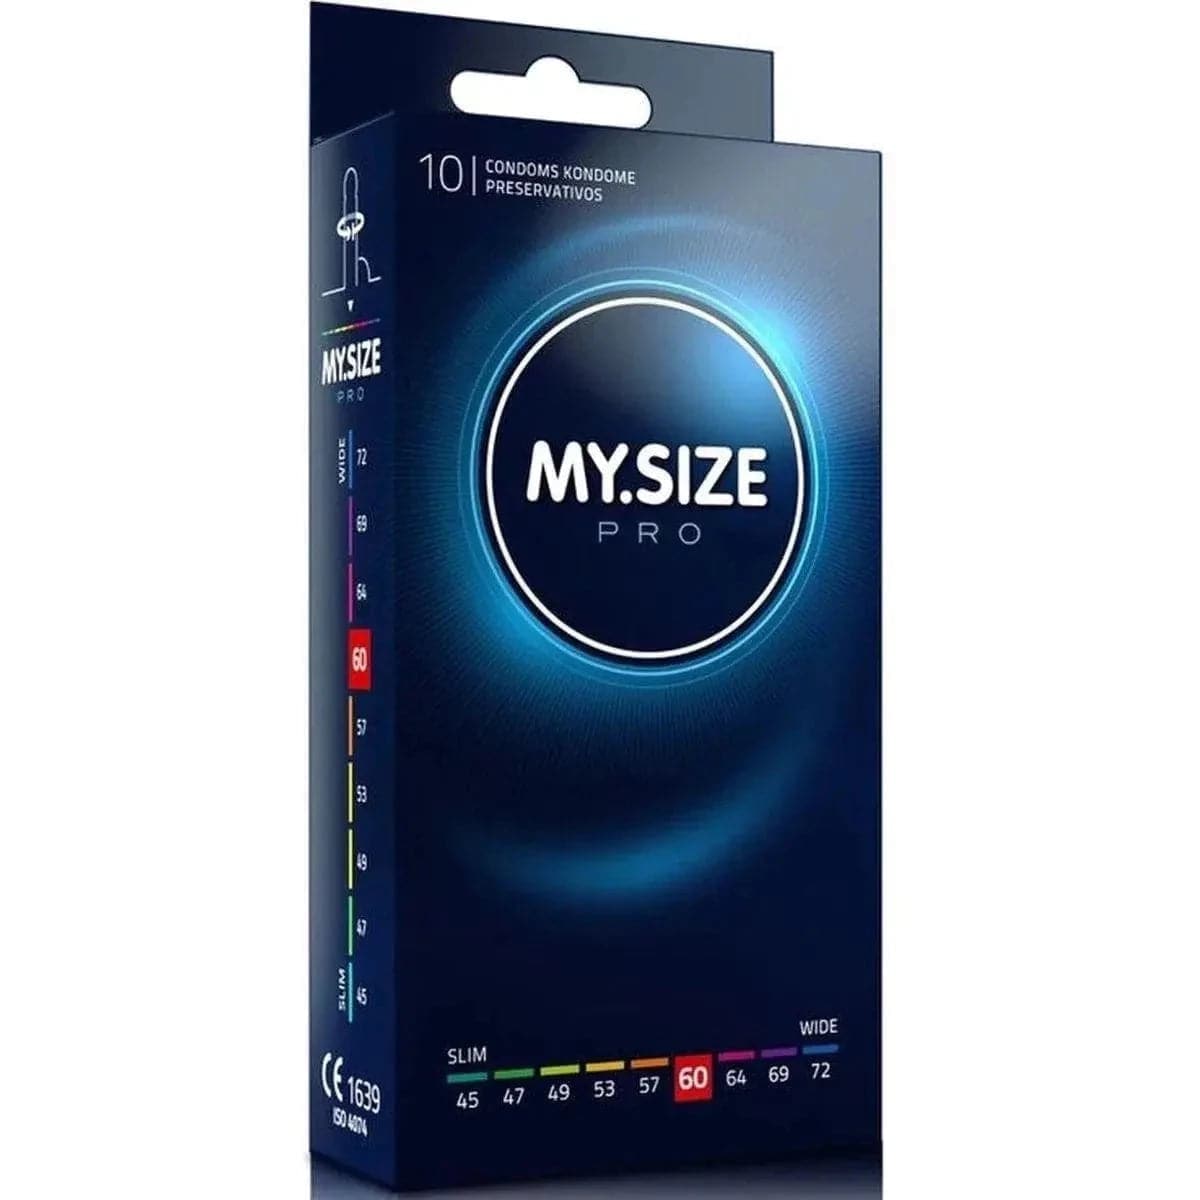 Preservativos XXL - My.Size 60mm - Melhor Ajuste e Sensibilidade - Pérola SexShop